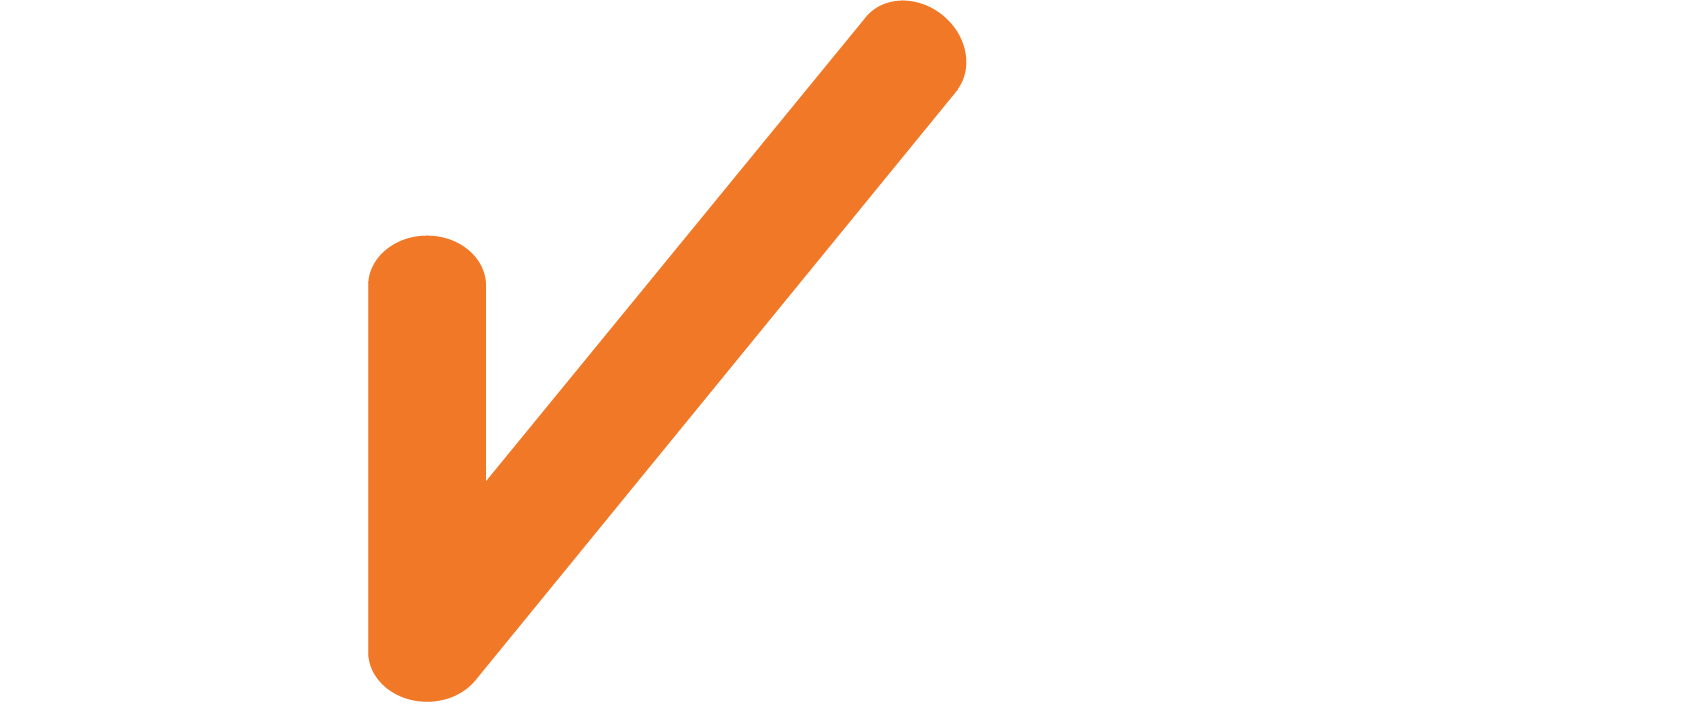 EKCS_Logo_White_TickOrange_RGB